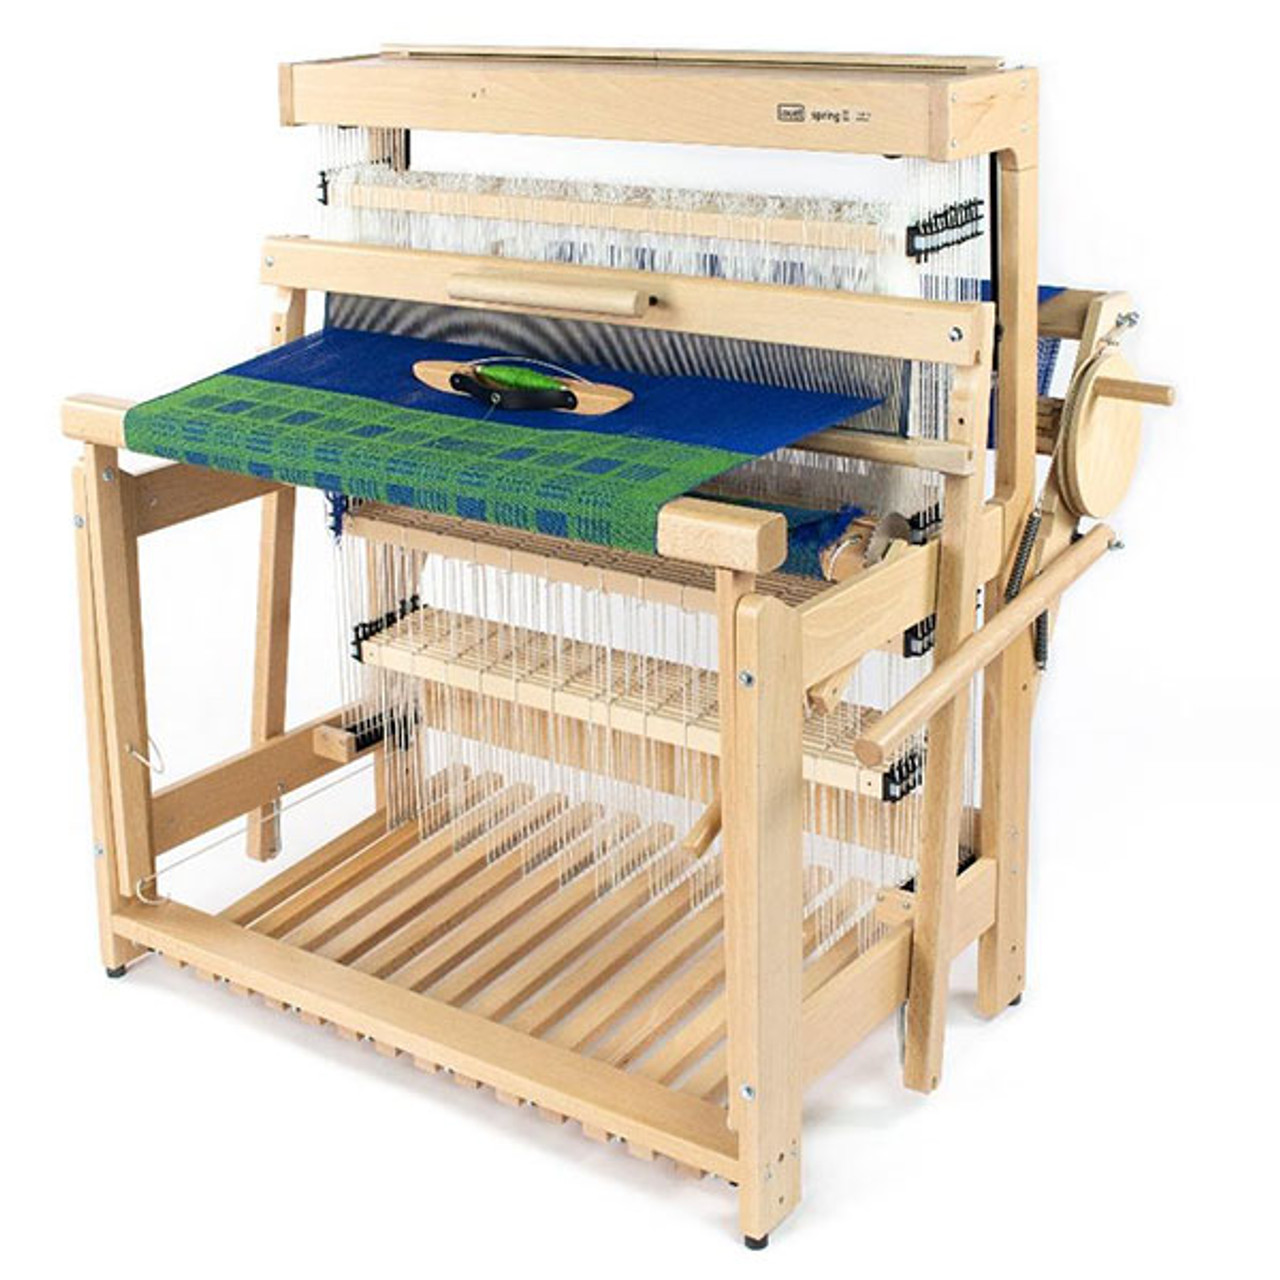 Louet Spring II Floor Loom - Spring II 110 (43) 8 Harness Loom